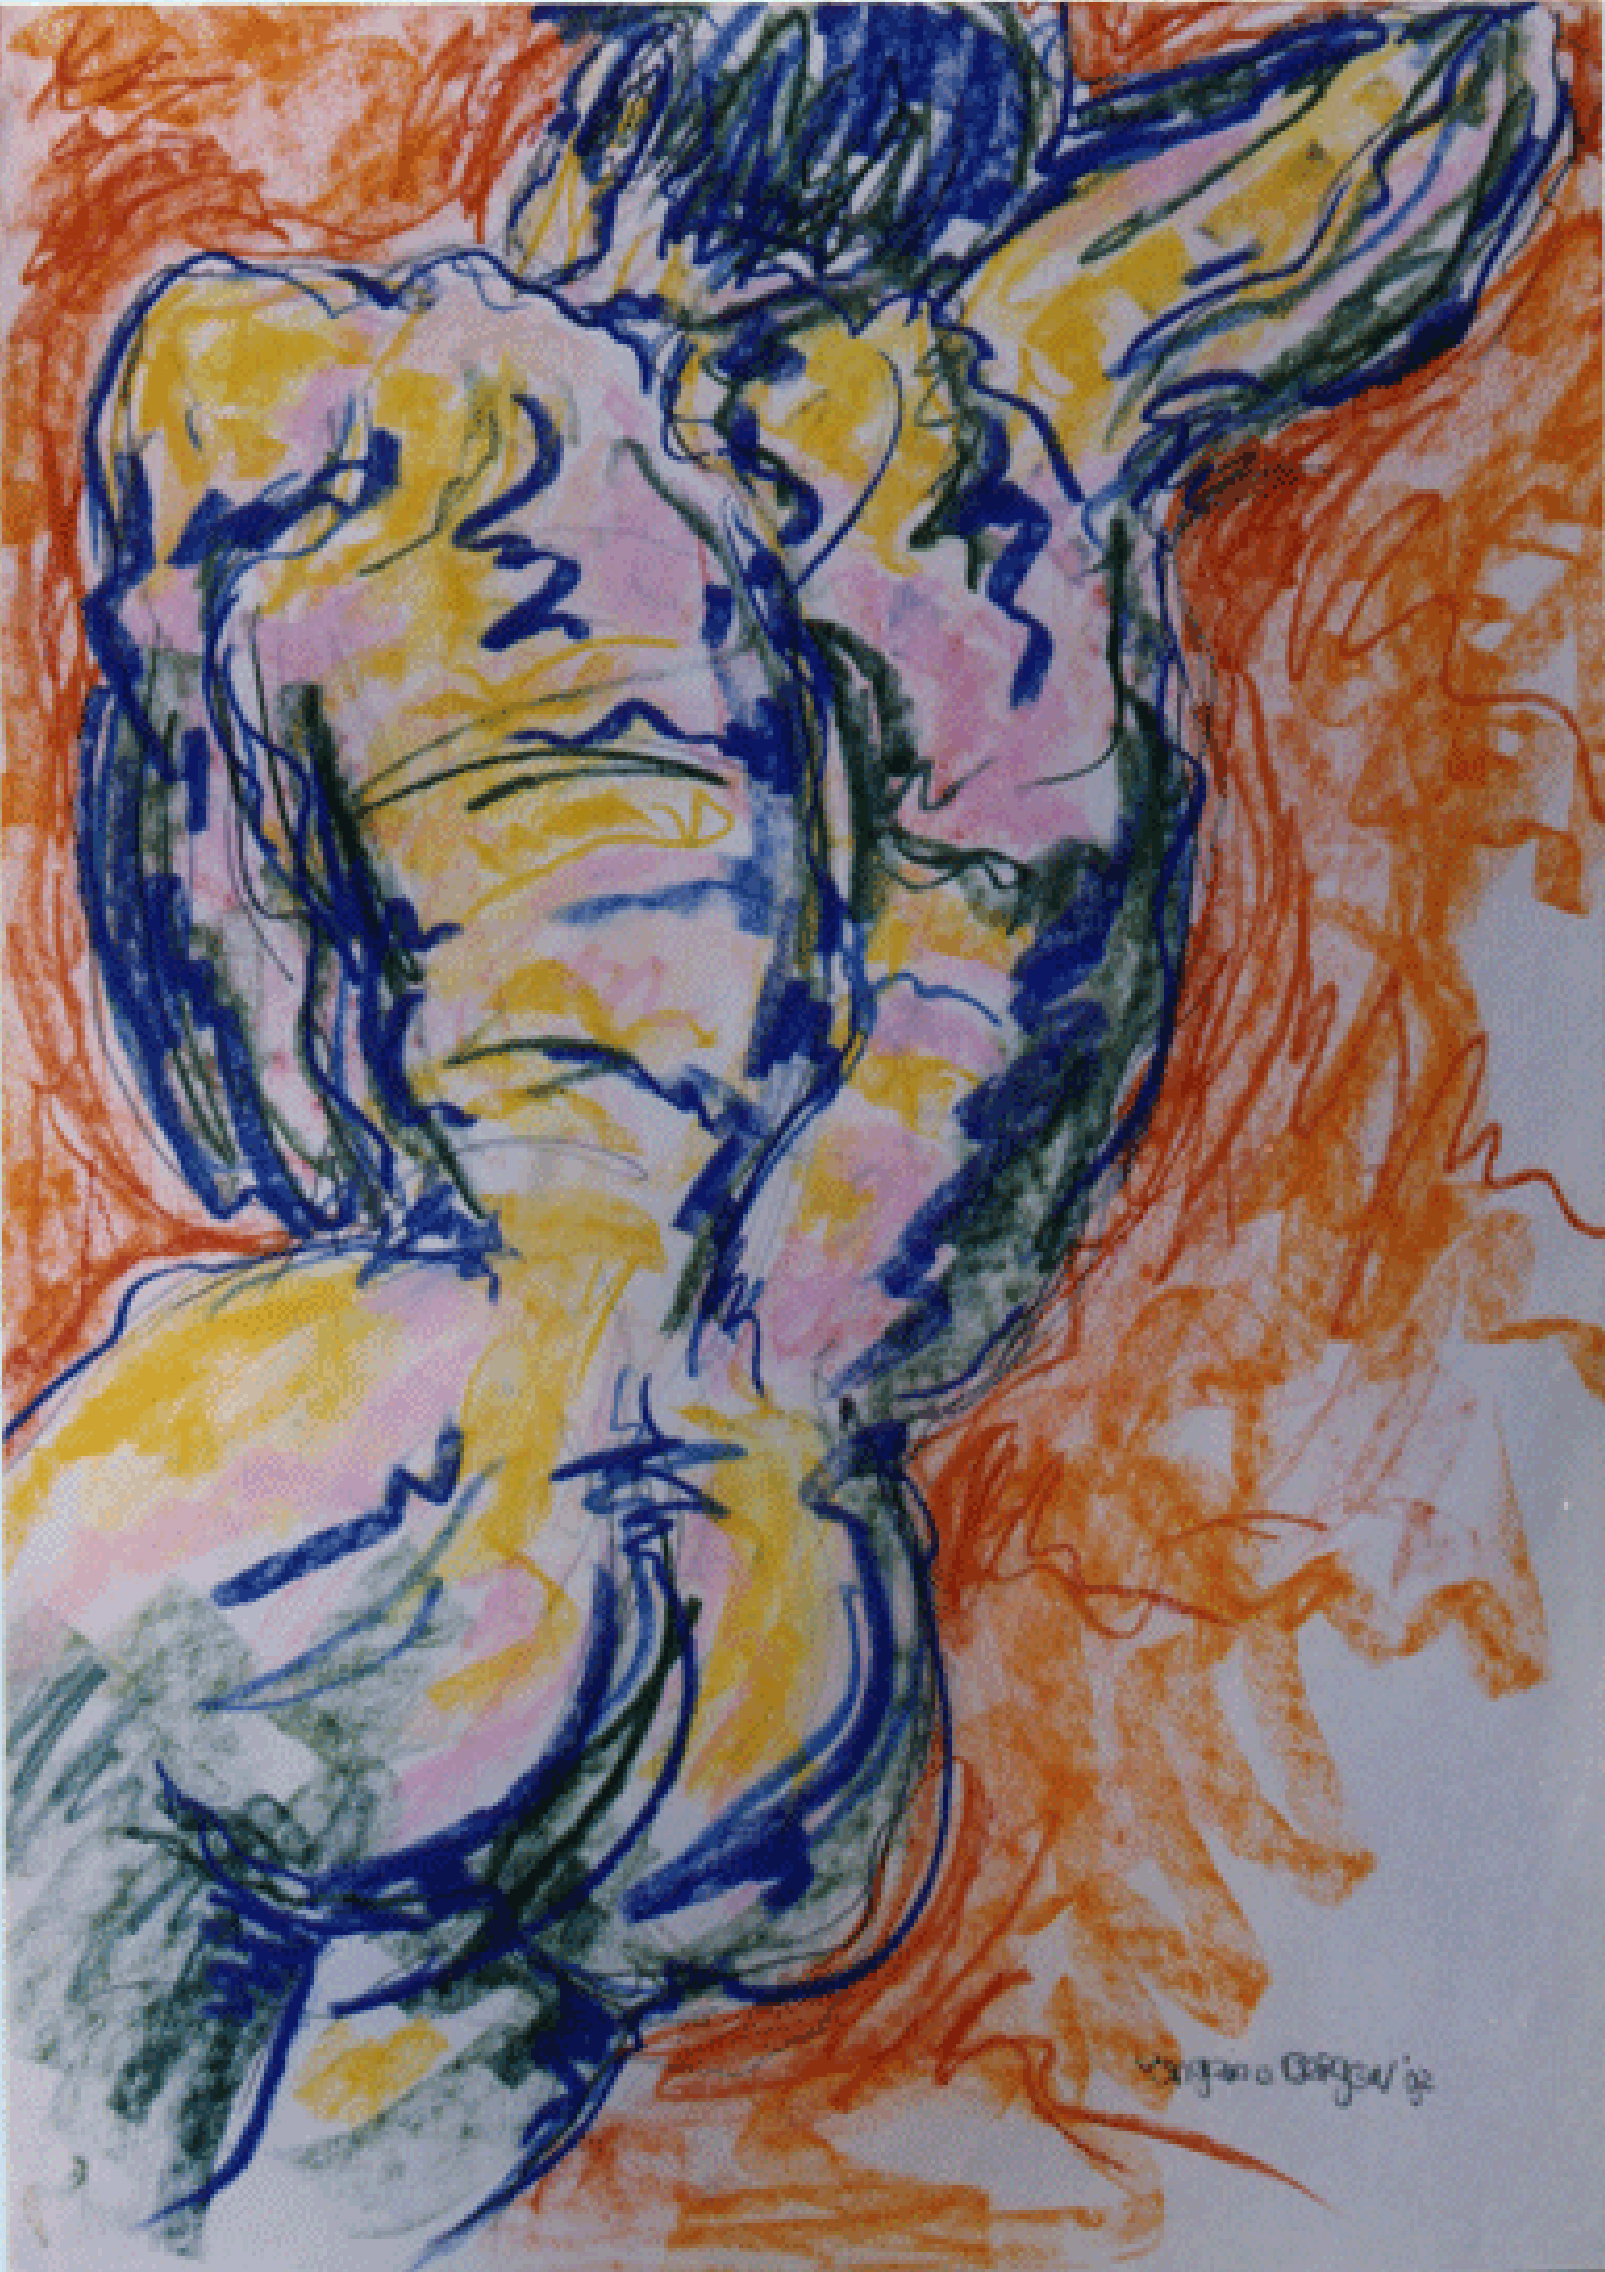 SLEEPING MAN 1992

pastel
75-110 cm.